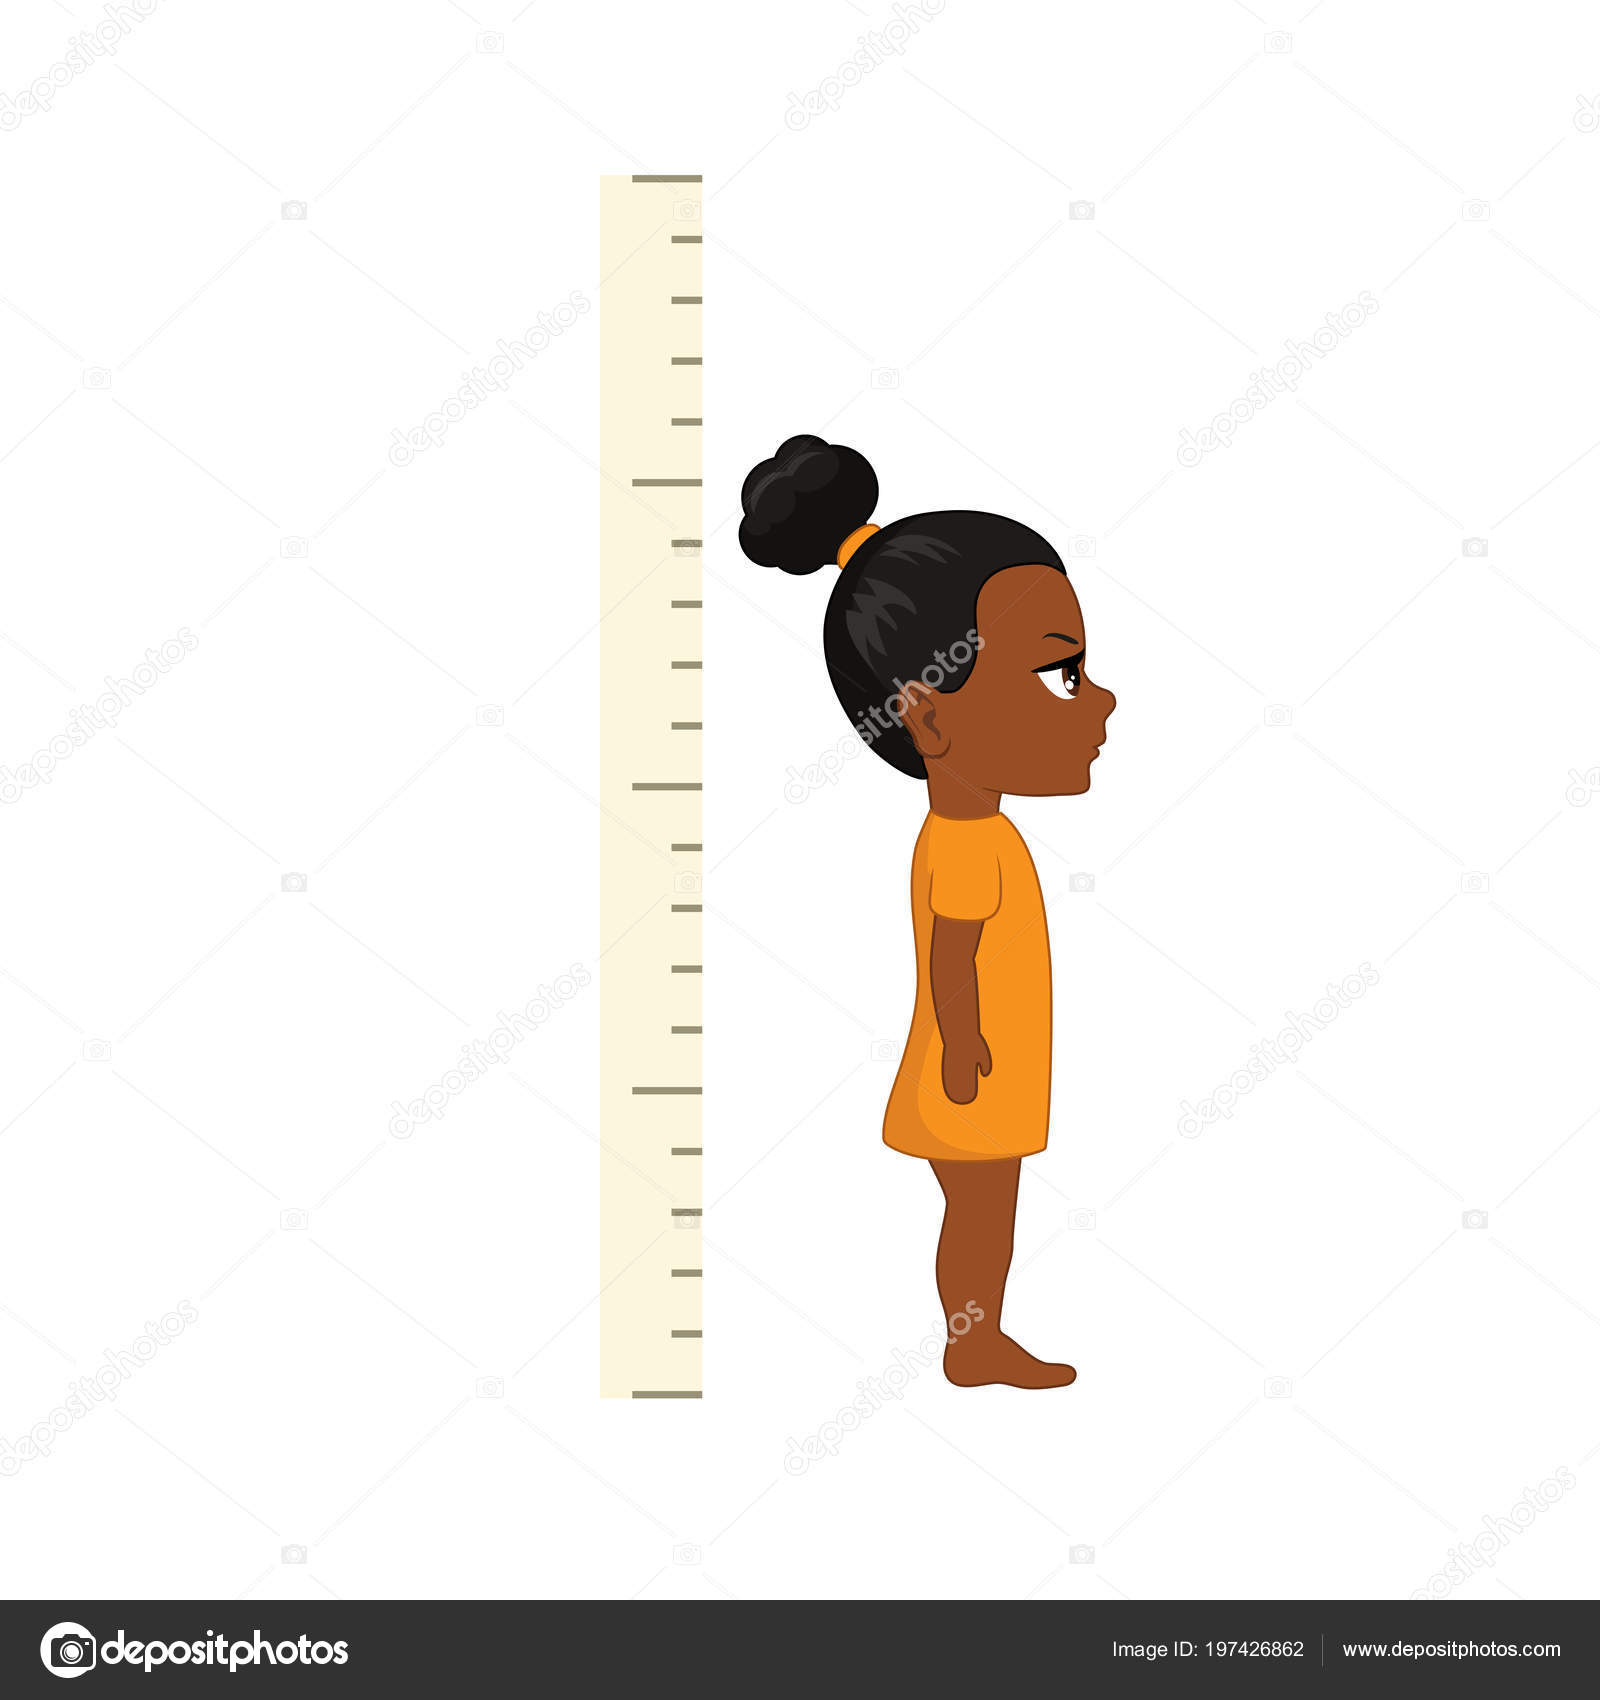 Tall Short Comparison Kids Vector Illustration Stock Vector